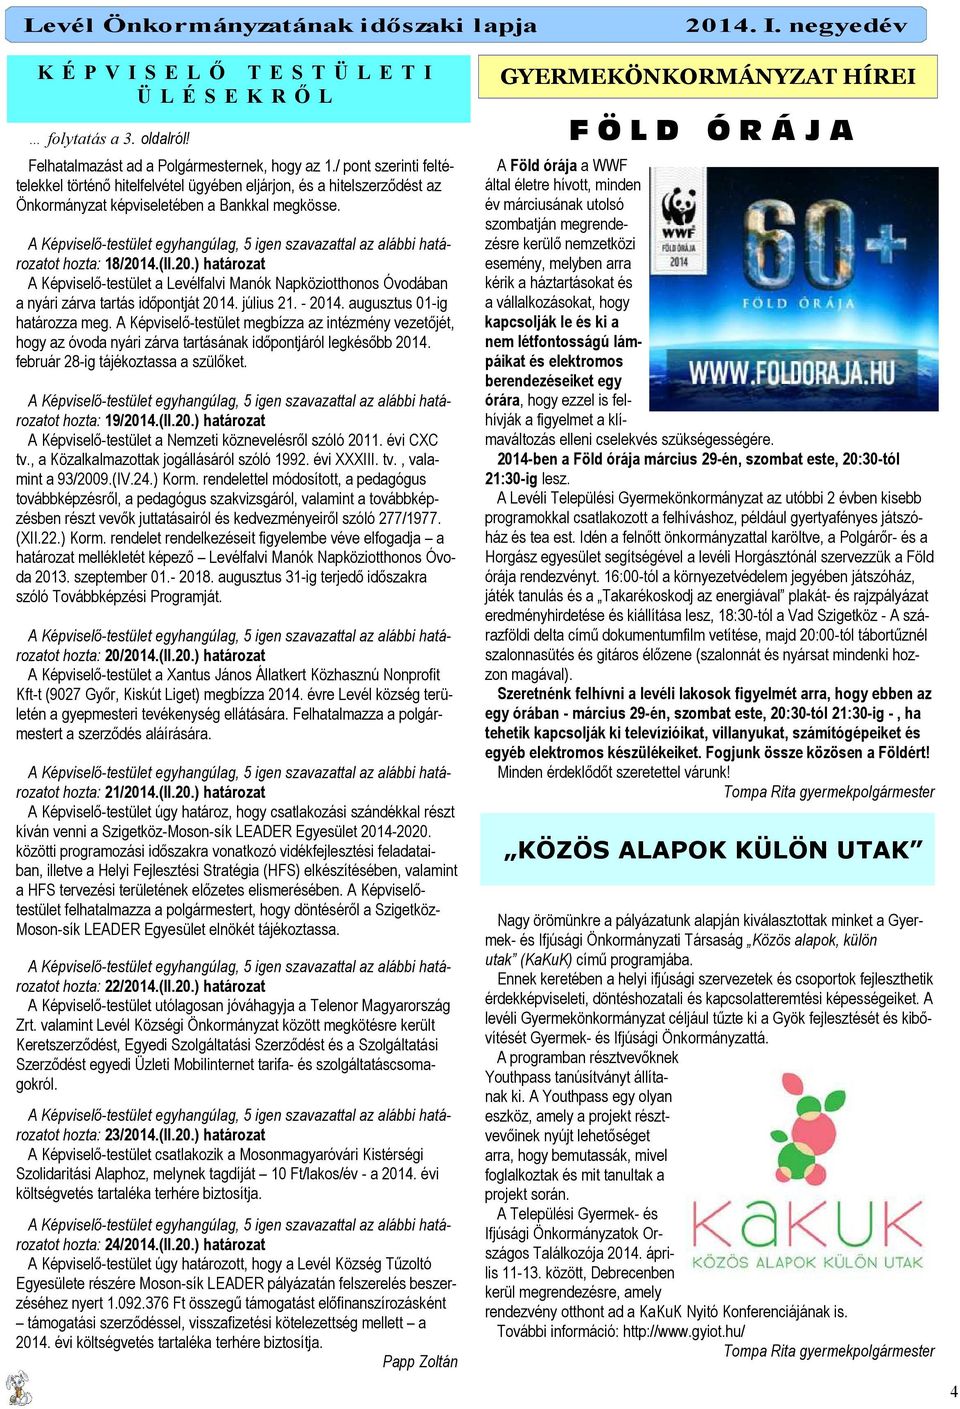 4.(II.20.) határozat A Képviselı-testület a Levélfalvi Manók Napköziotthonos Óvodában a nyári zárva tartás idıpontját 2014. július 21. - 2014. augusztus 01-ig határozza meg.